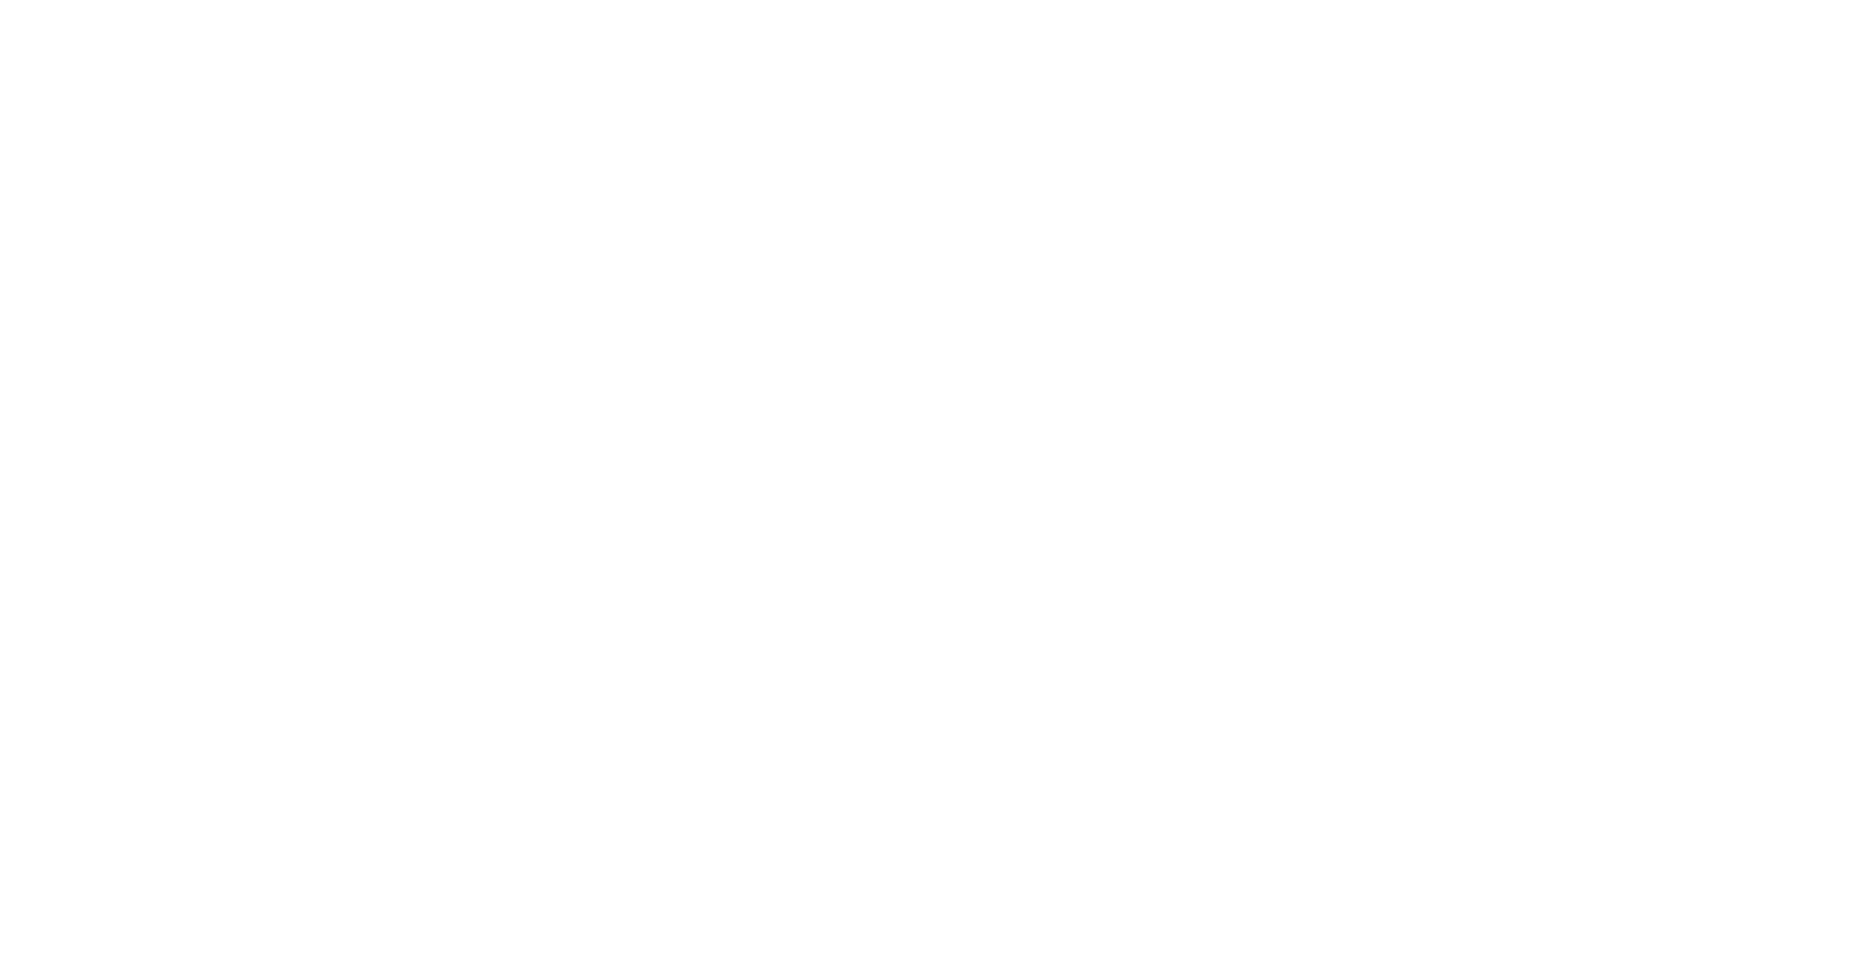 Logo Actus Limousin